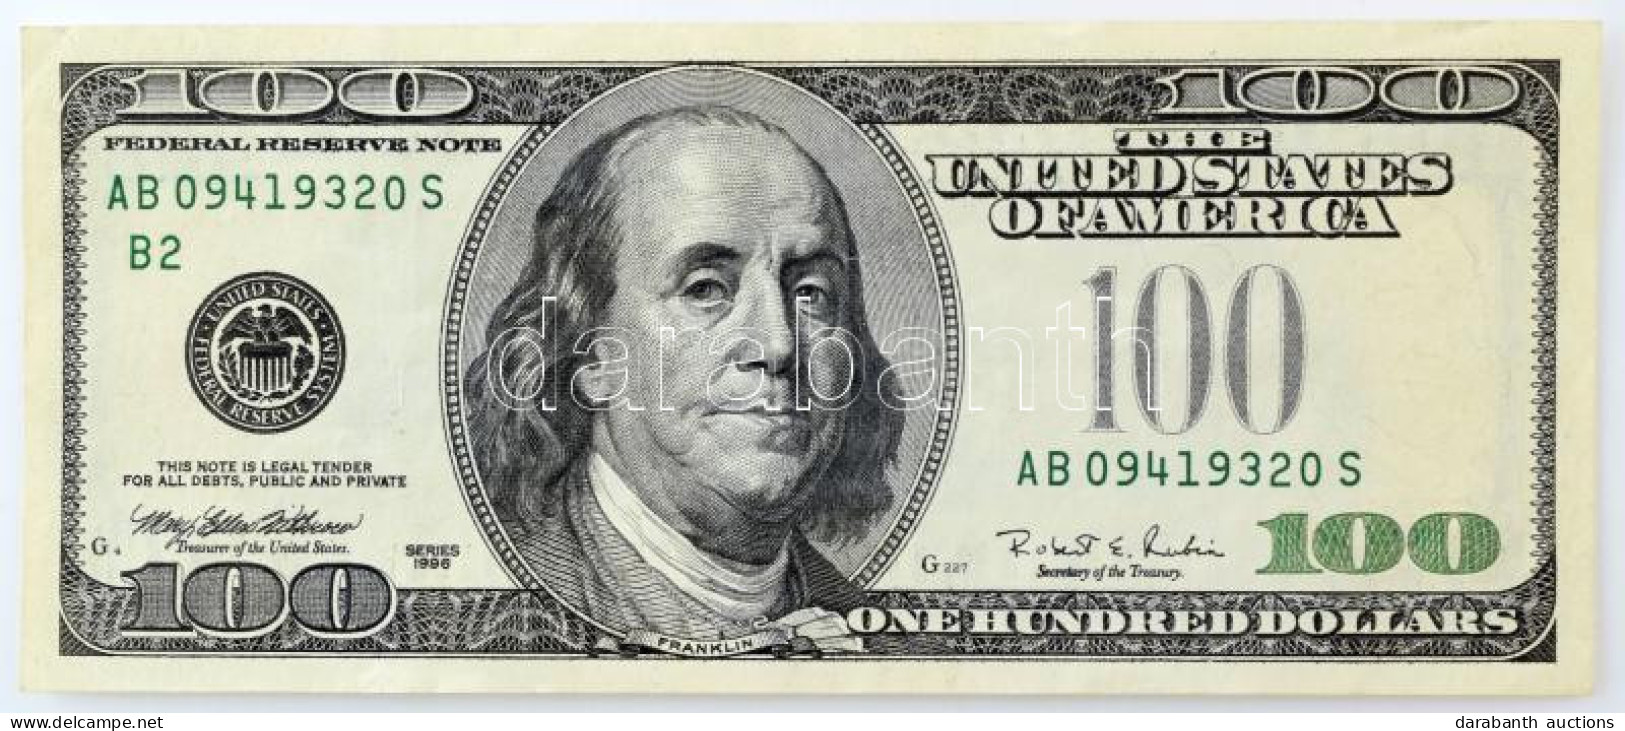 Amerikai Egyesült Államok 1996-1999. (1996) 100$ "Federal States Note" Nyomdahibás Bankjegy Zöld Pecsét Nélkül, "Mary El - Non Classés